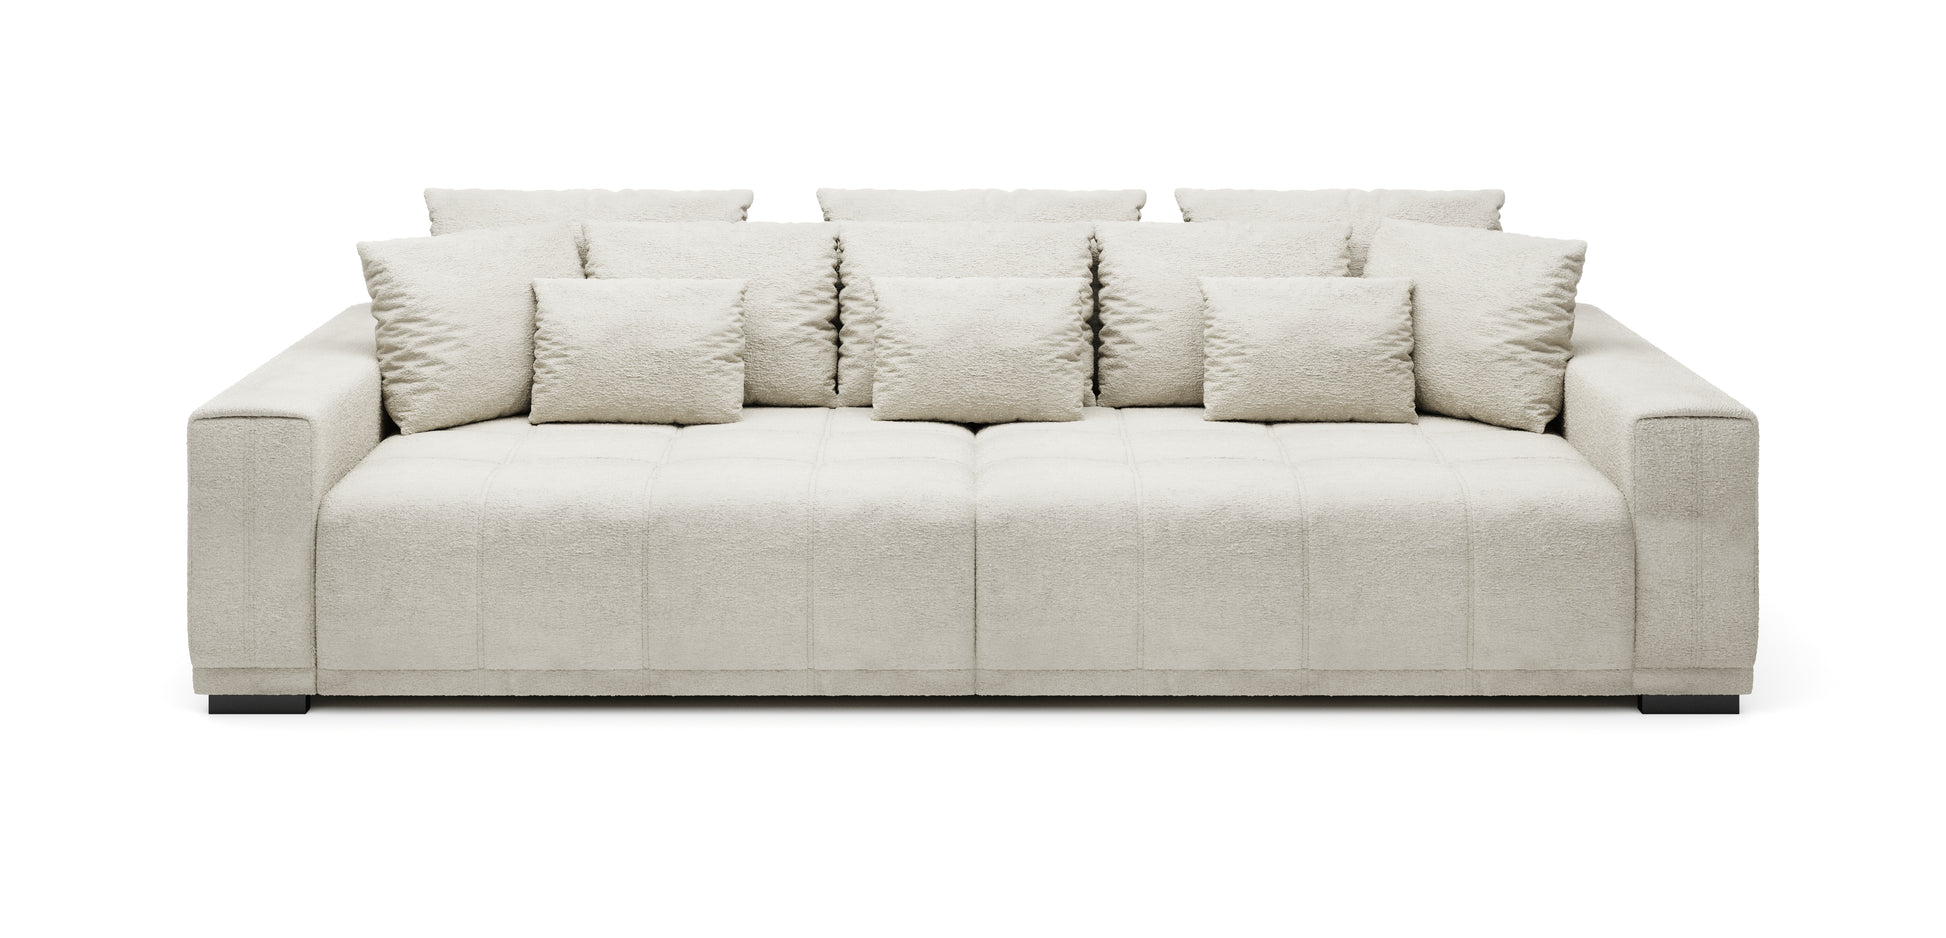 Jasna duża sofa kanapa MINDELO do spania 2 pojemniki z licznymi poduchami i poduszkami oraz z ozdobnymi przeszyciami.